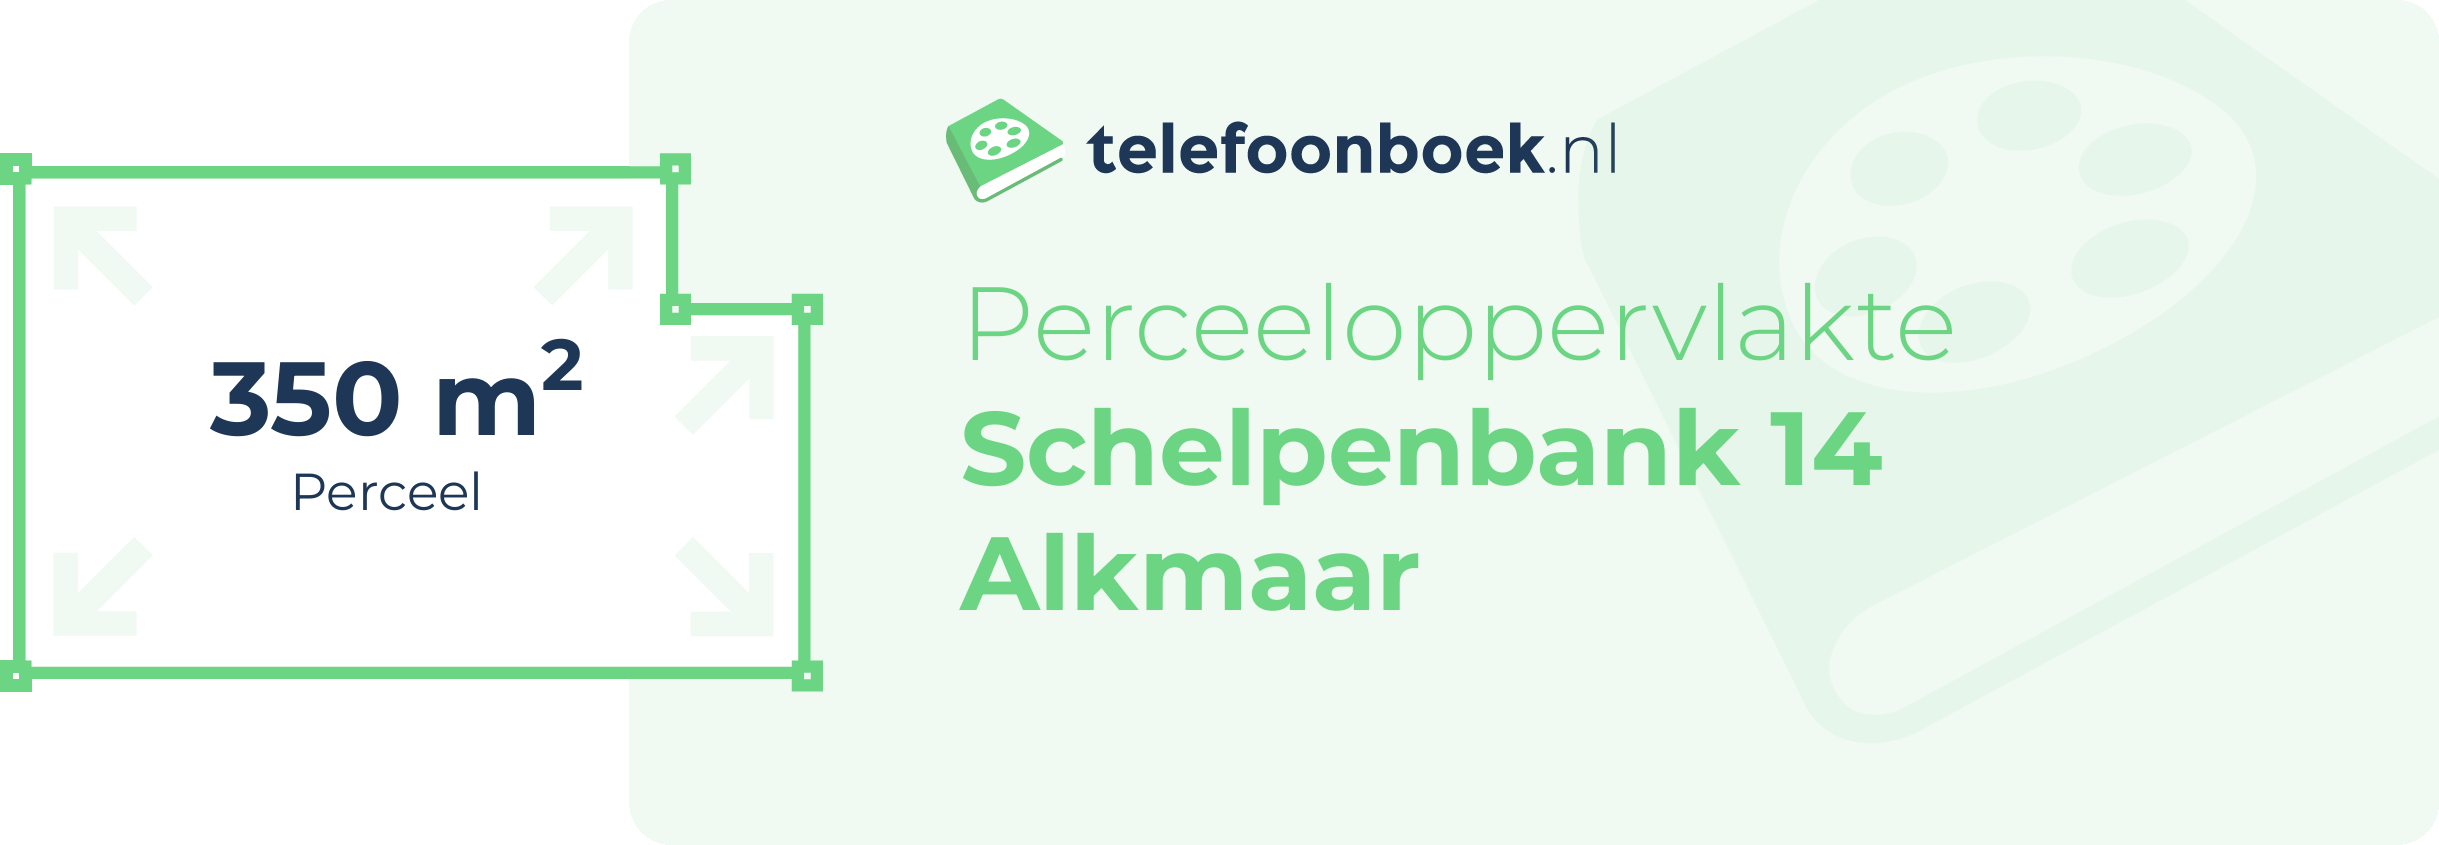 Perceeloppervlakte Schelpenbank 14 Alkmaar